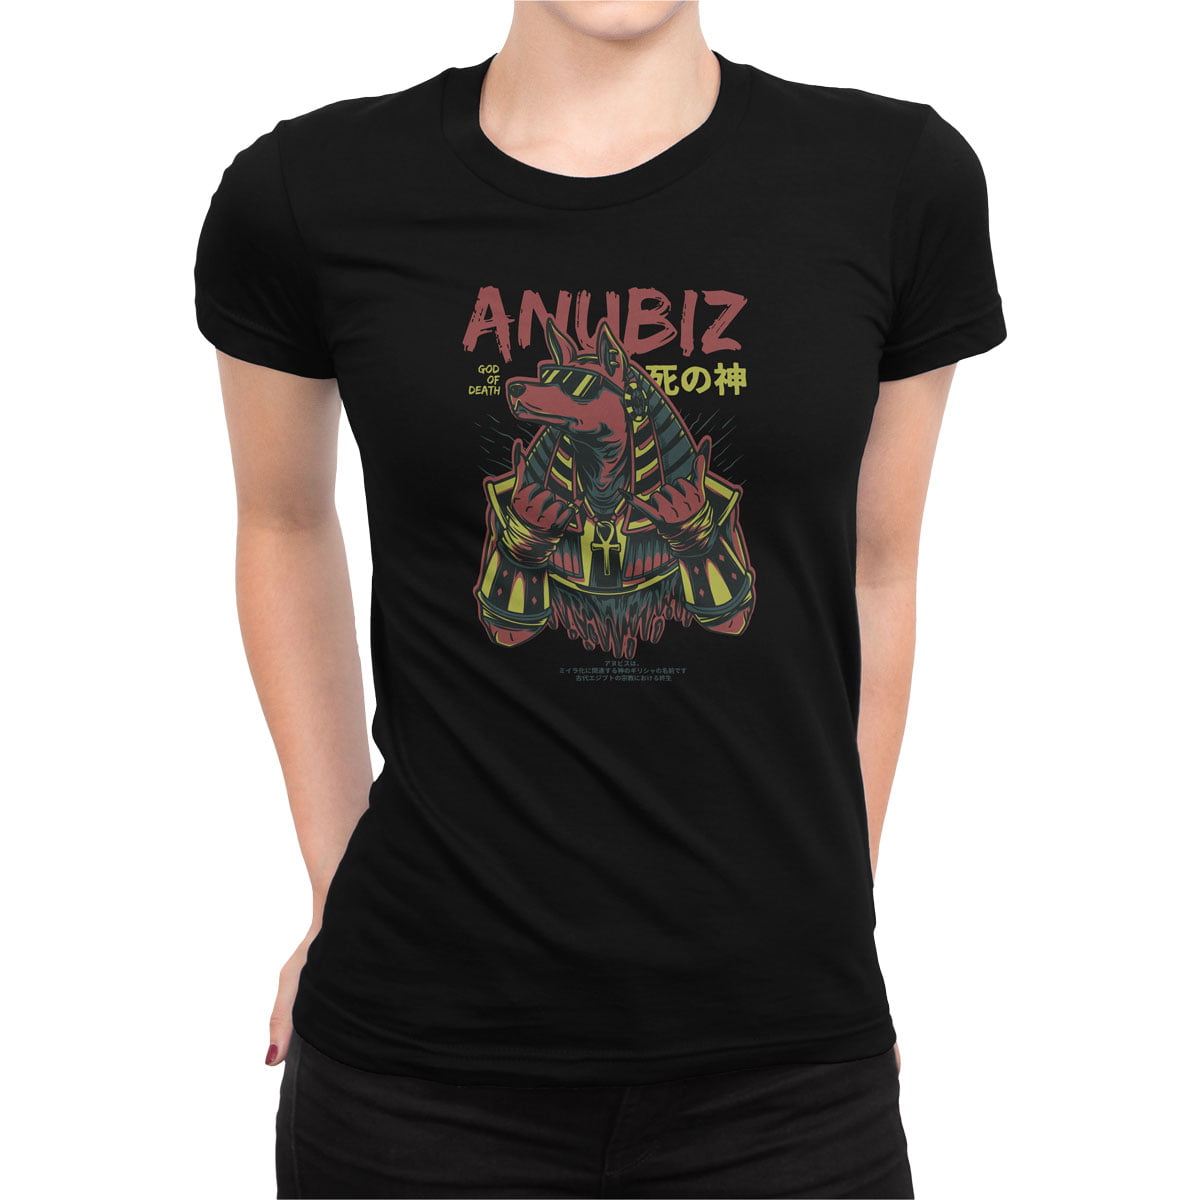 Anubis kadin tisort s - anubis (anubiz) kadın t-shirt - figurex